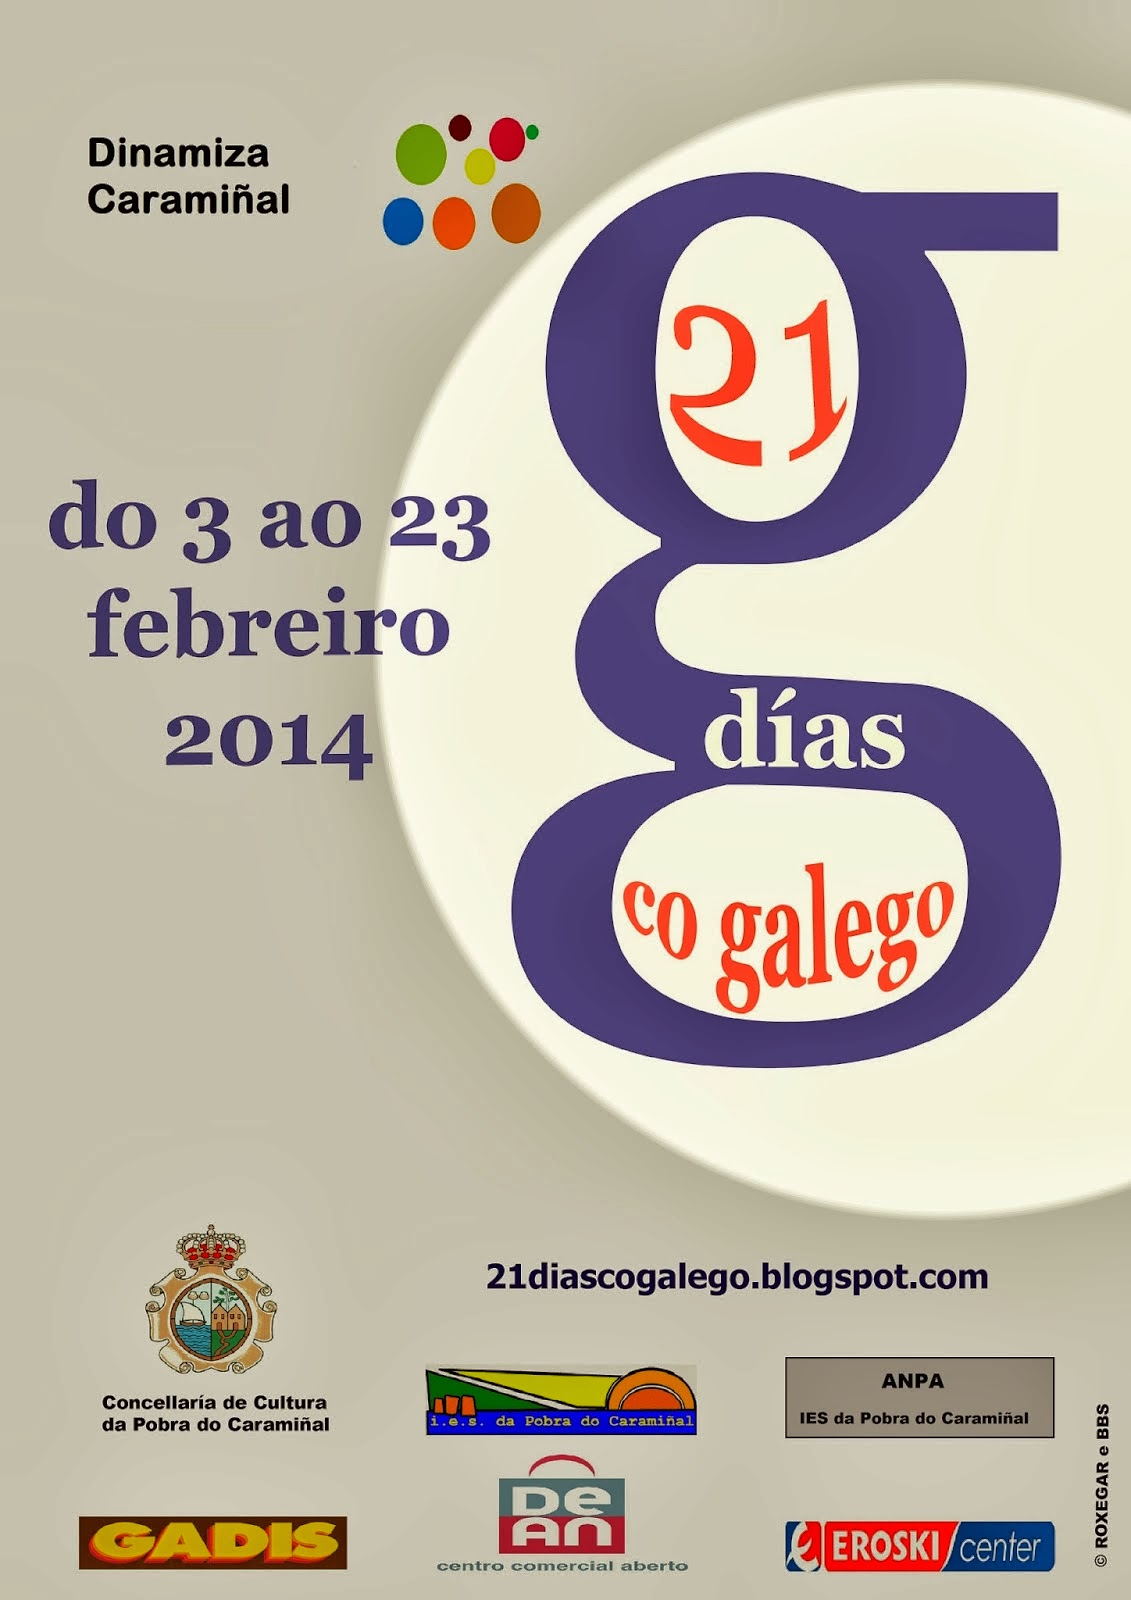 http://21diascogalego.blogspot.com.es/